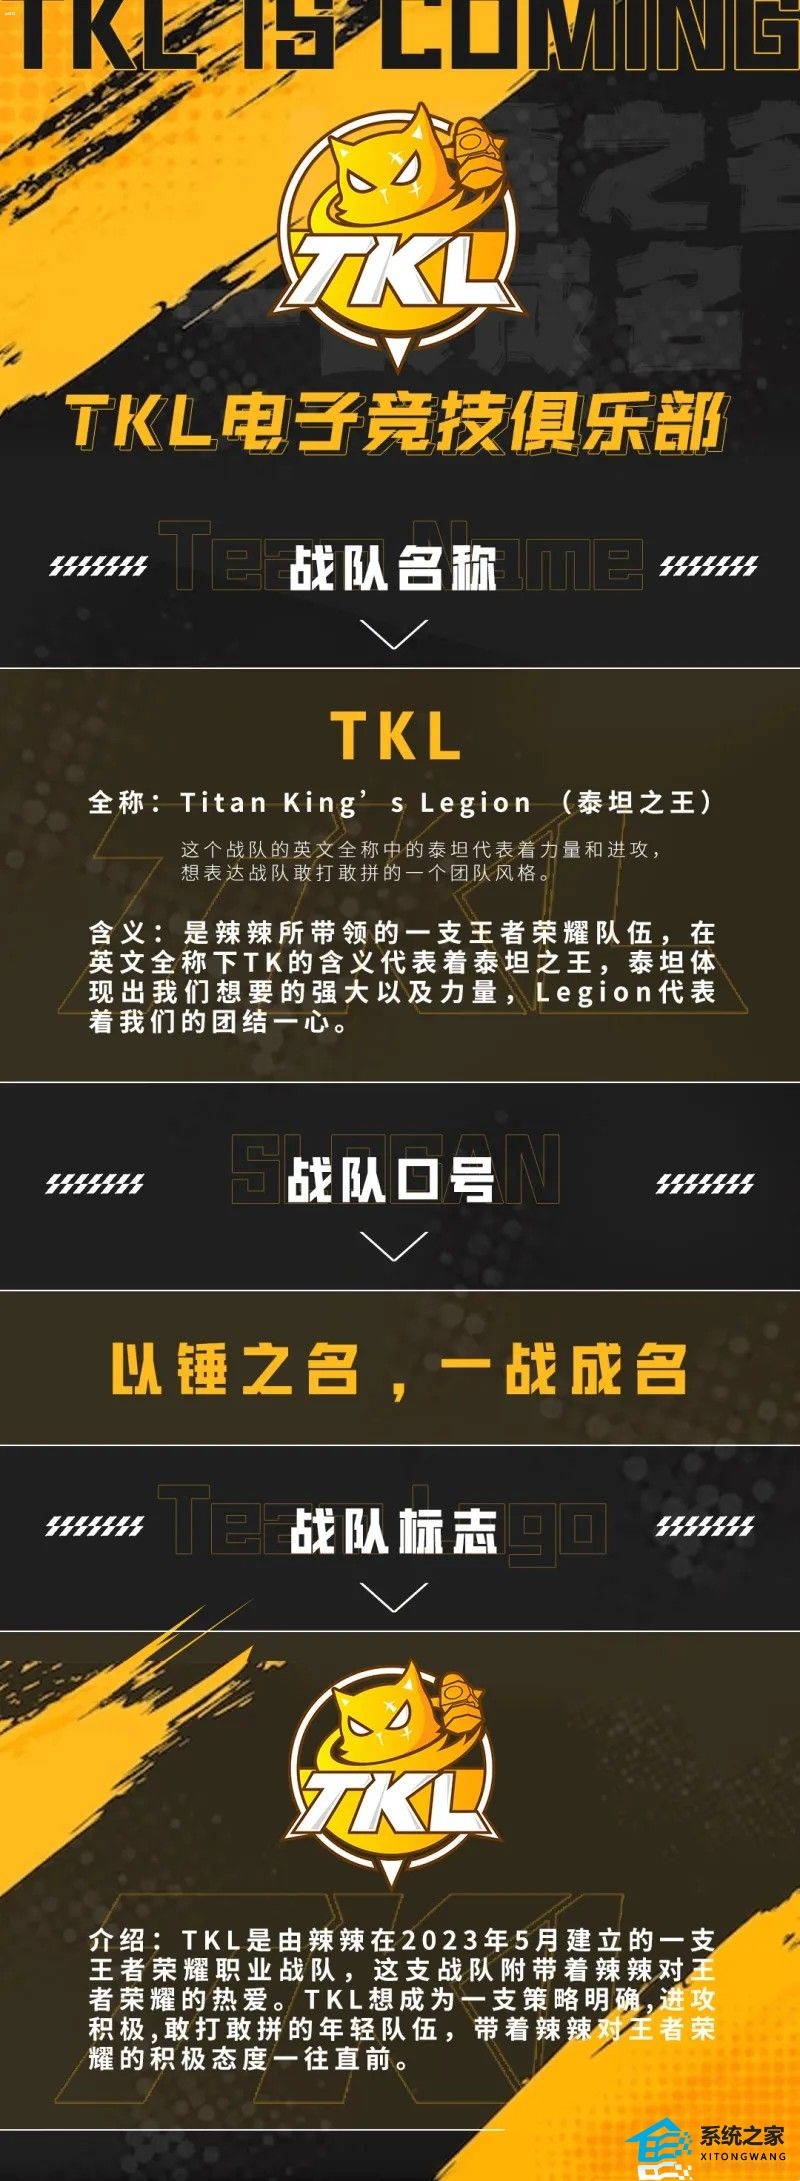 王者荣耀TKL战队是谁创建的 2023TKL战队老板资料介绍